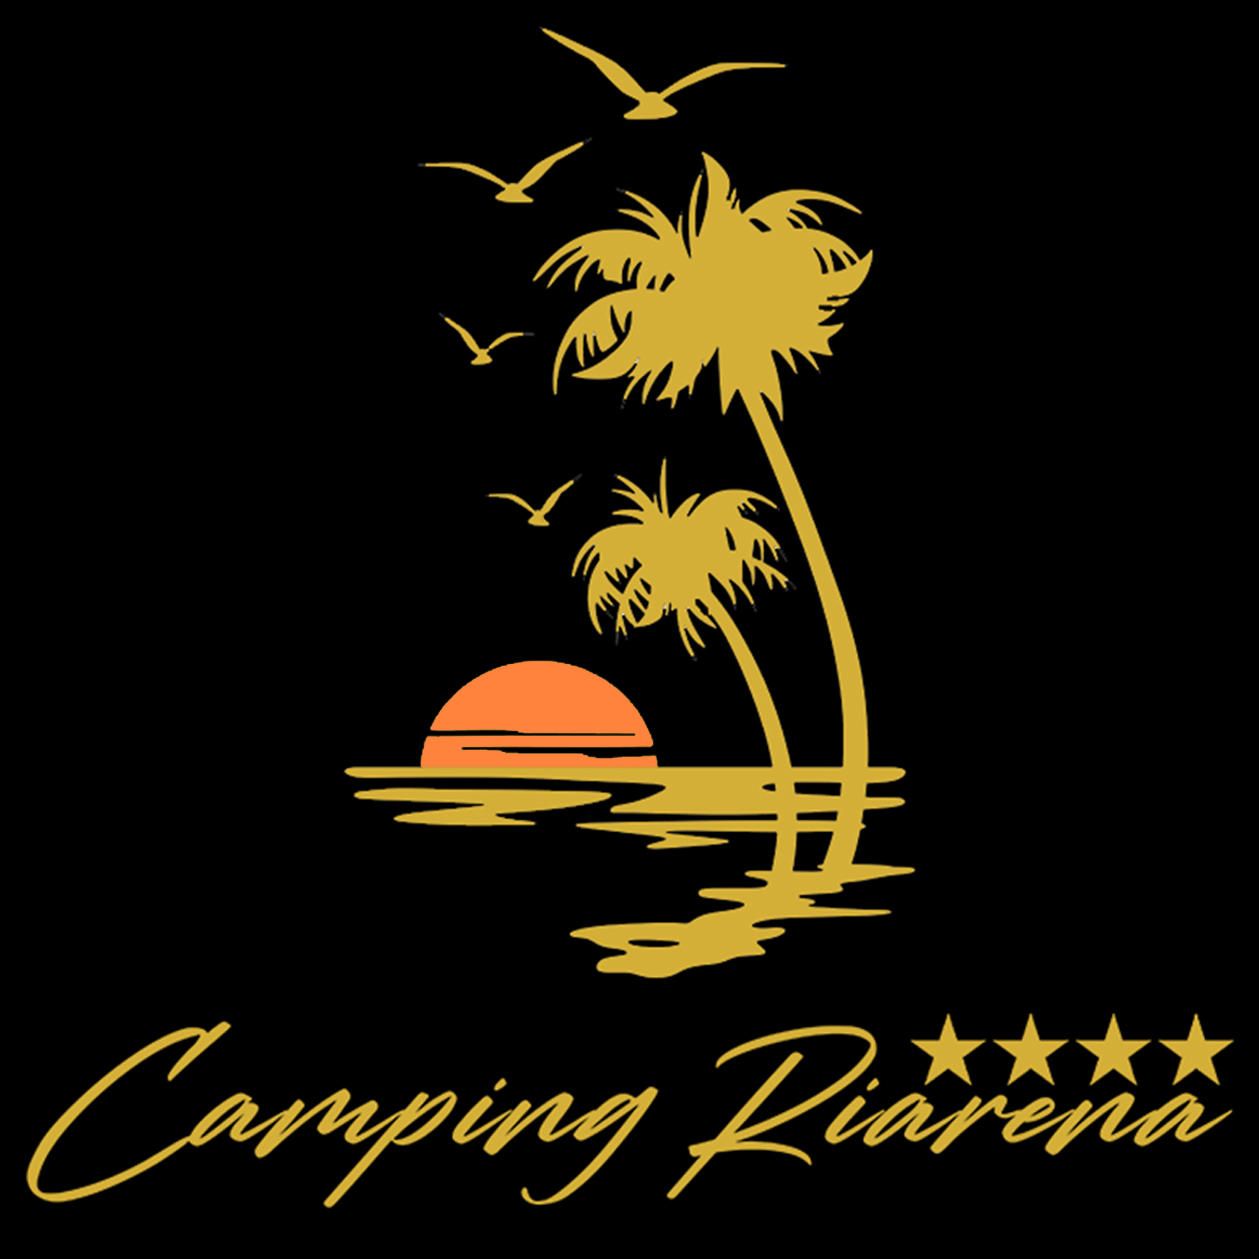 Camping Riarena Logo